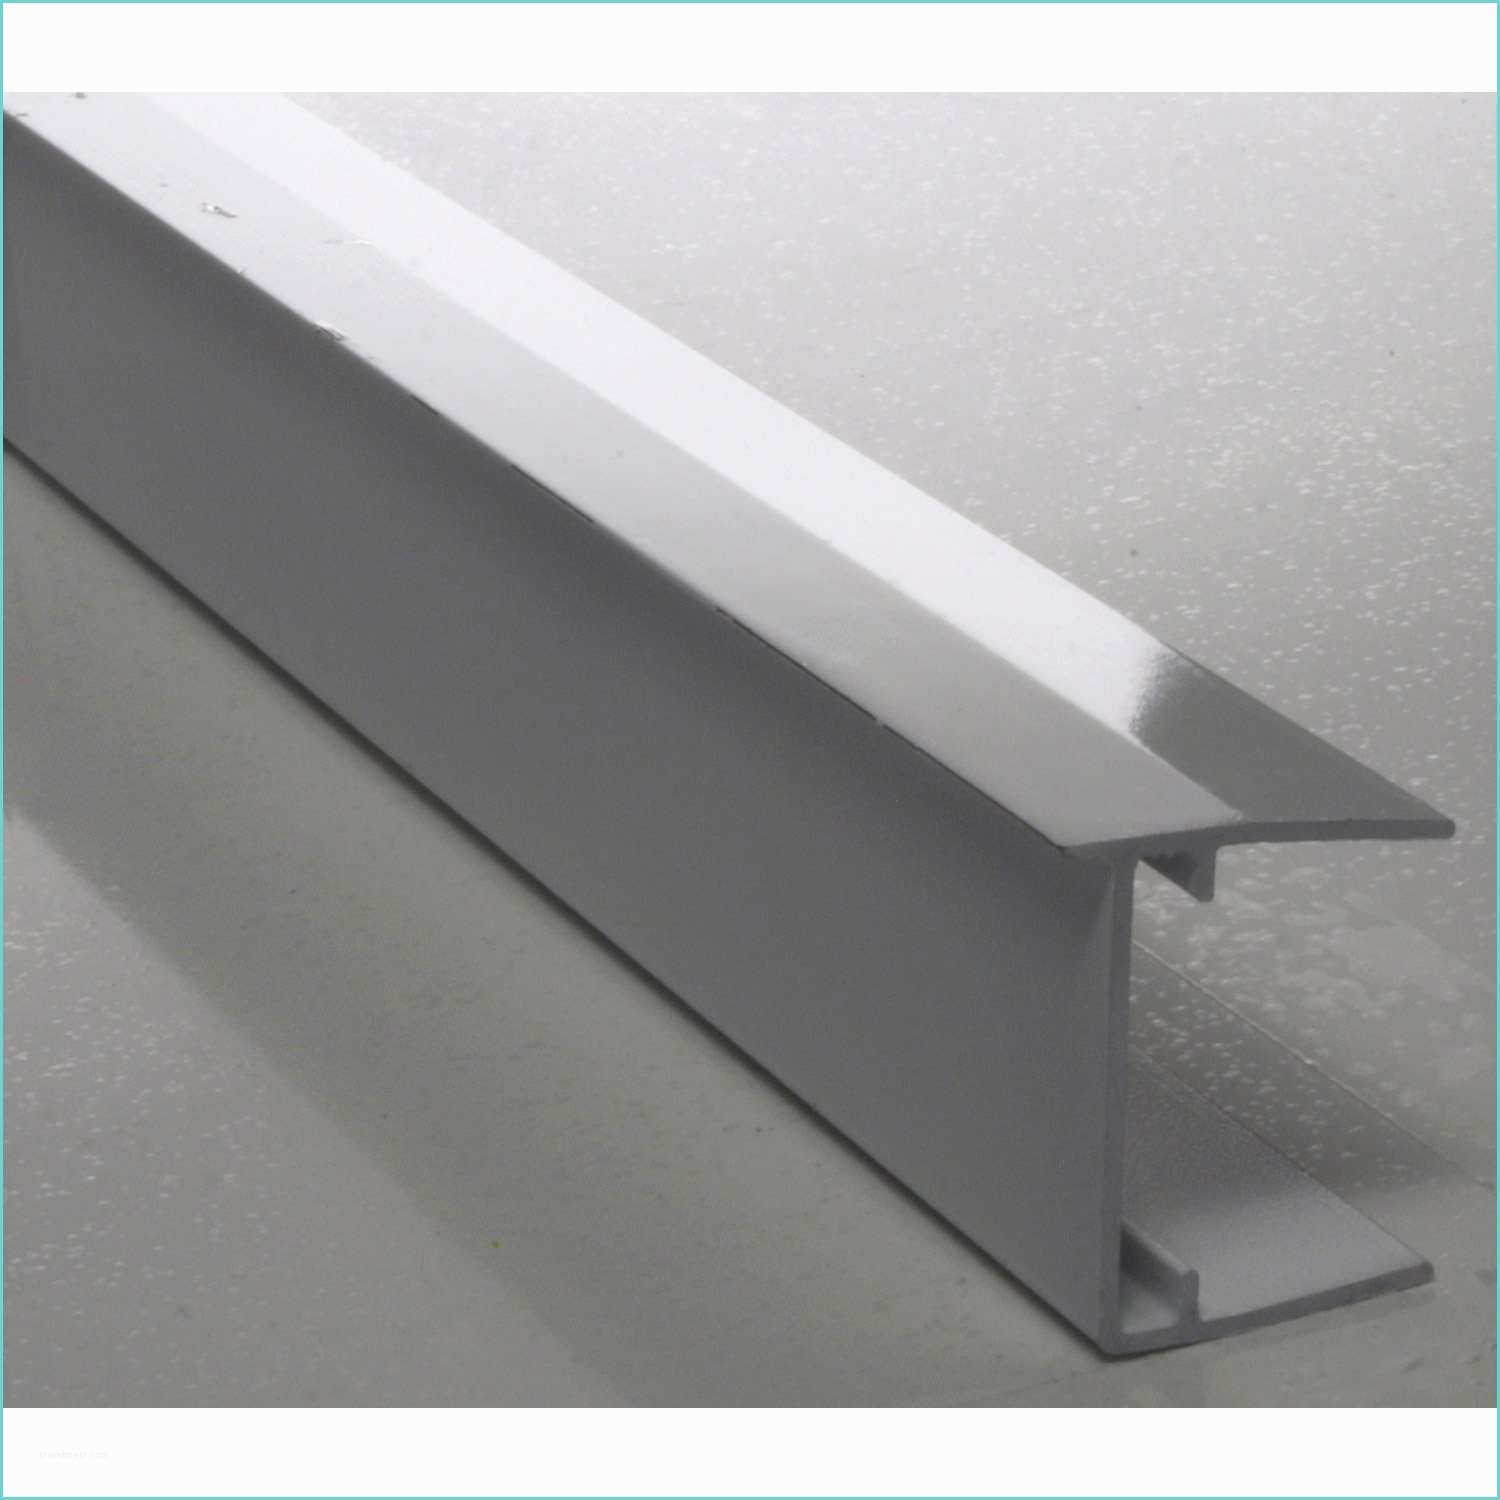 Profil Aluminium Pour Plaque Polycarbonate Leroy Merlin Profil Obturateur Pour Plaque Ep 32 Mm Aluminium L 1 25